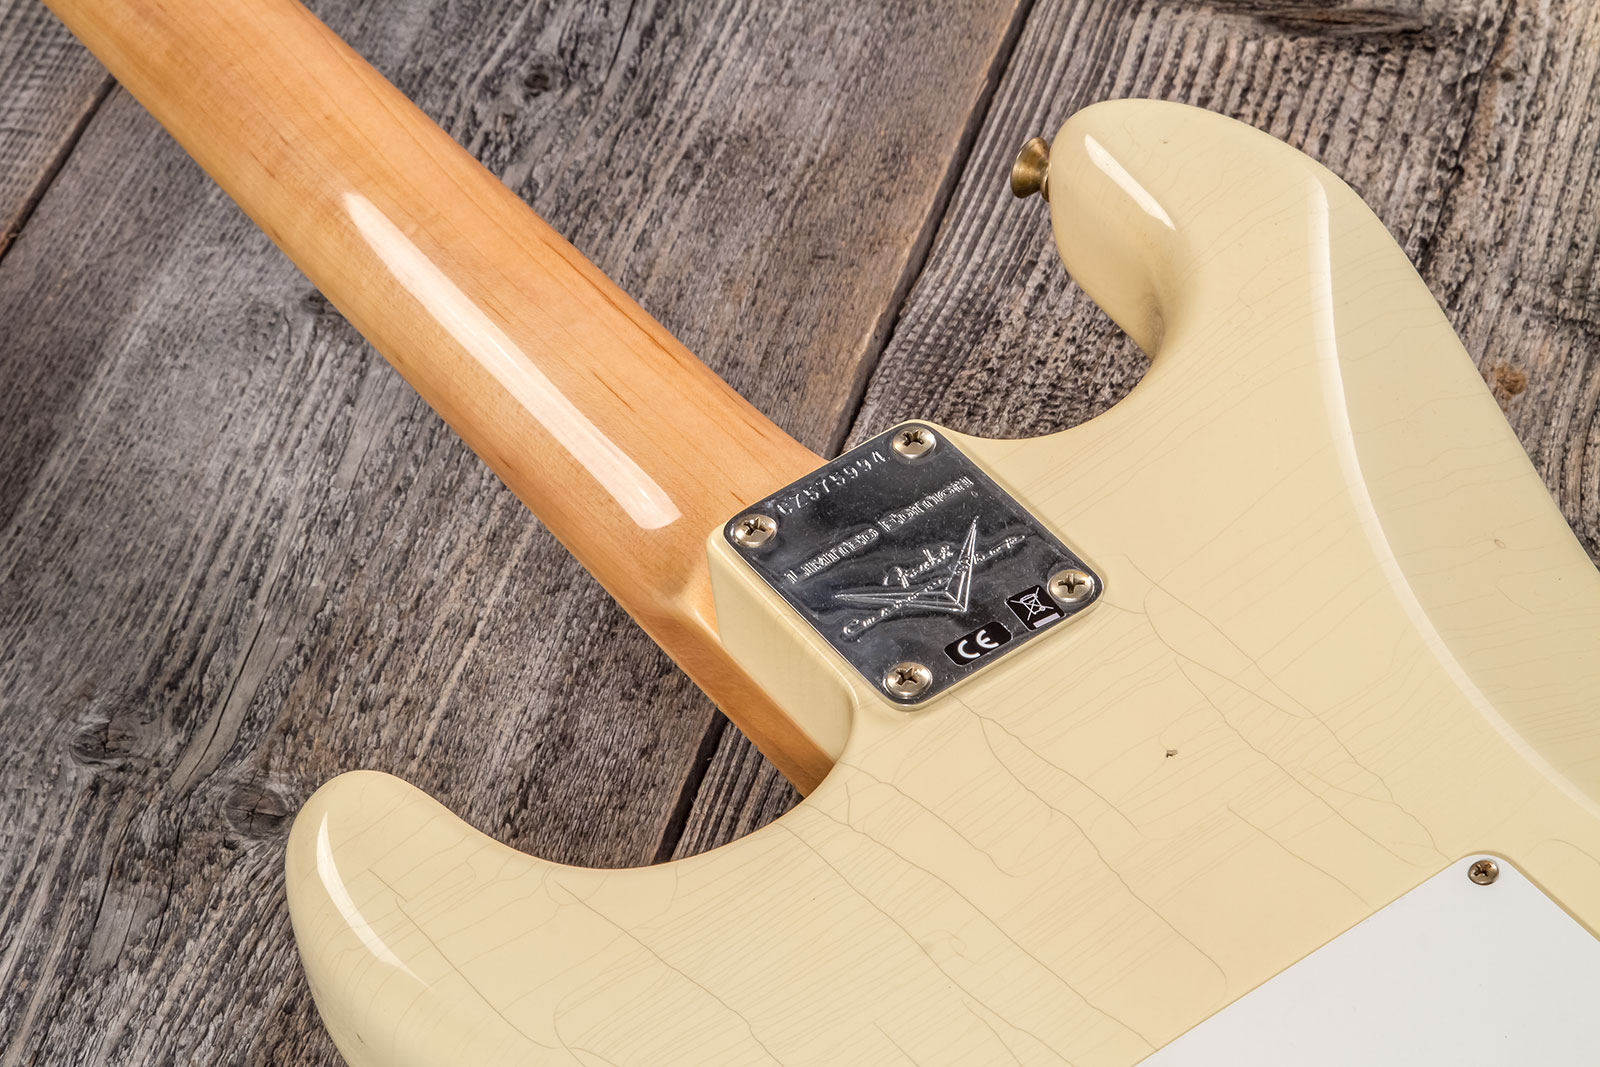 Fender Custom Shop Strat 1969 3s Trem Mn #cz576216 - Journeyman Relic Aged Vintage White - Elektrische gitaar in Str-vorm - Variation 6